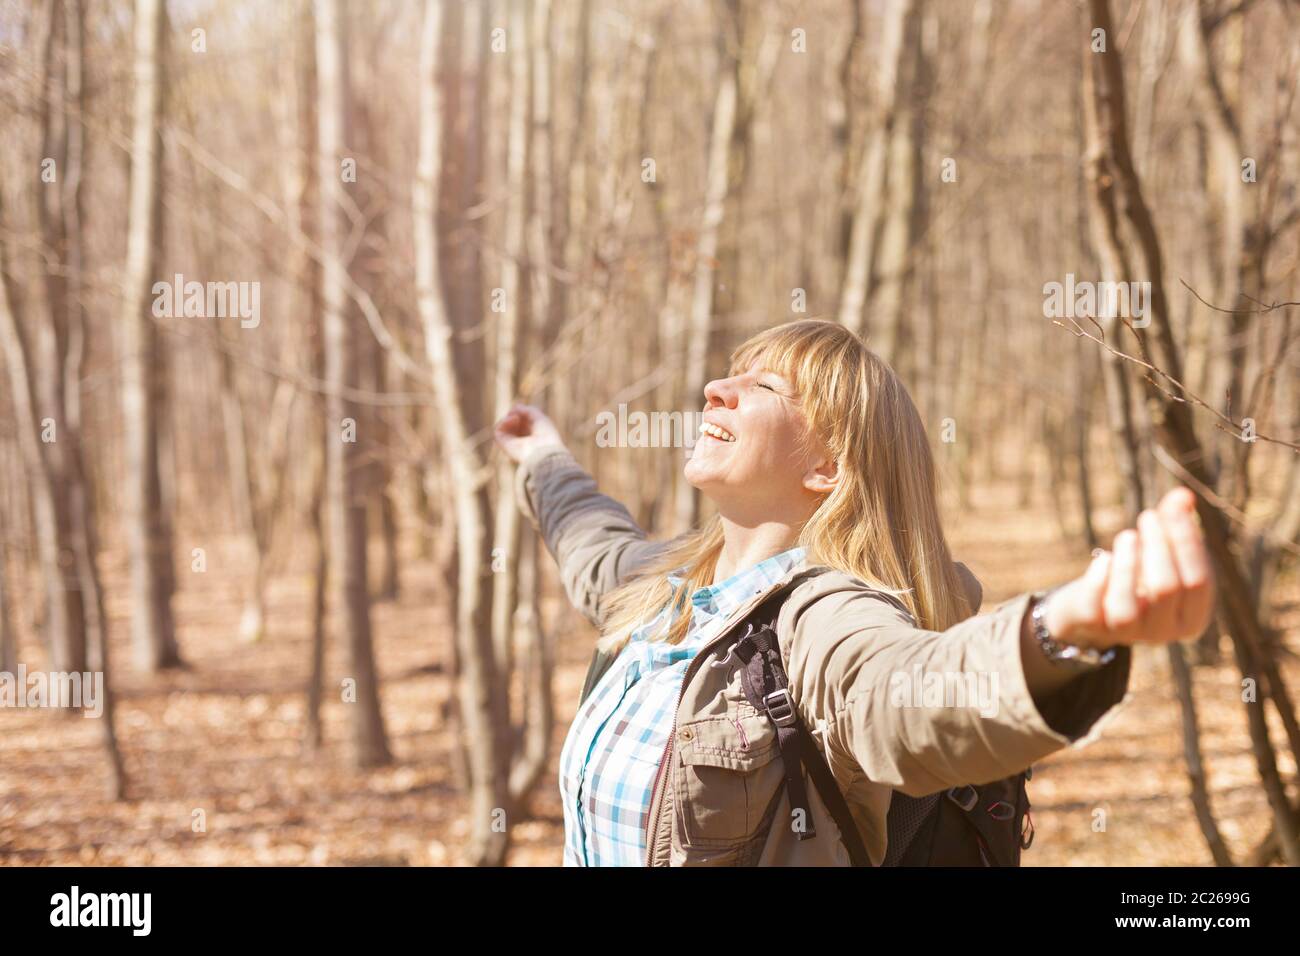 Frau ist Wandern und Trekking draußen auf einem Hügel. Tourismus, Urlaub und Fitness-Aktivitäten Konzept. Stockfoto